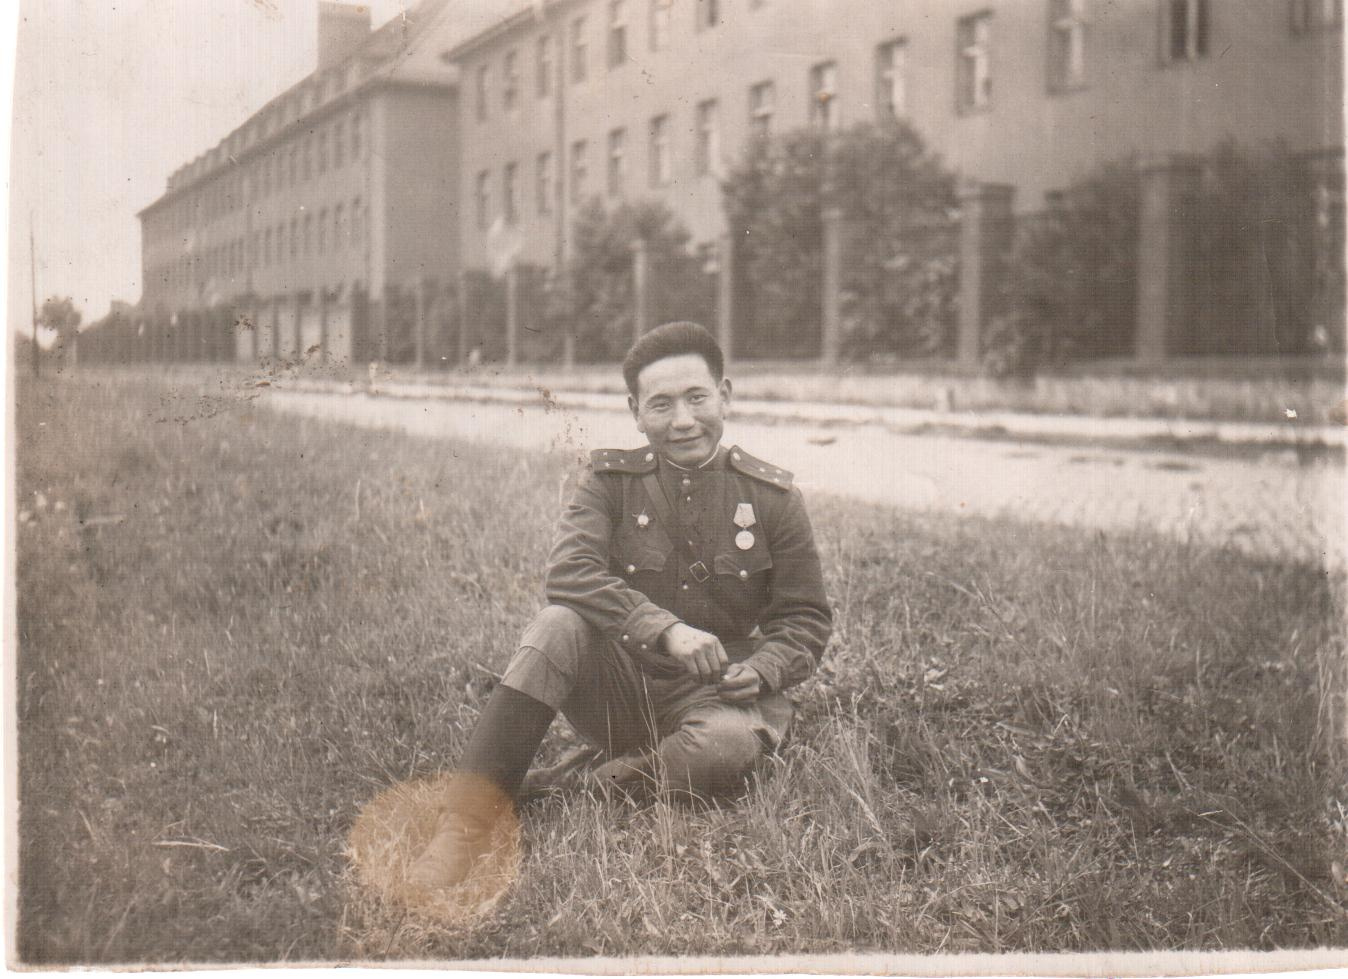 Этот снимок сделал для фронтовой газеты фотокорреспондент <nobr class="_">Г. Герлиц</nobr> 25 мая 1945 года в Германии